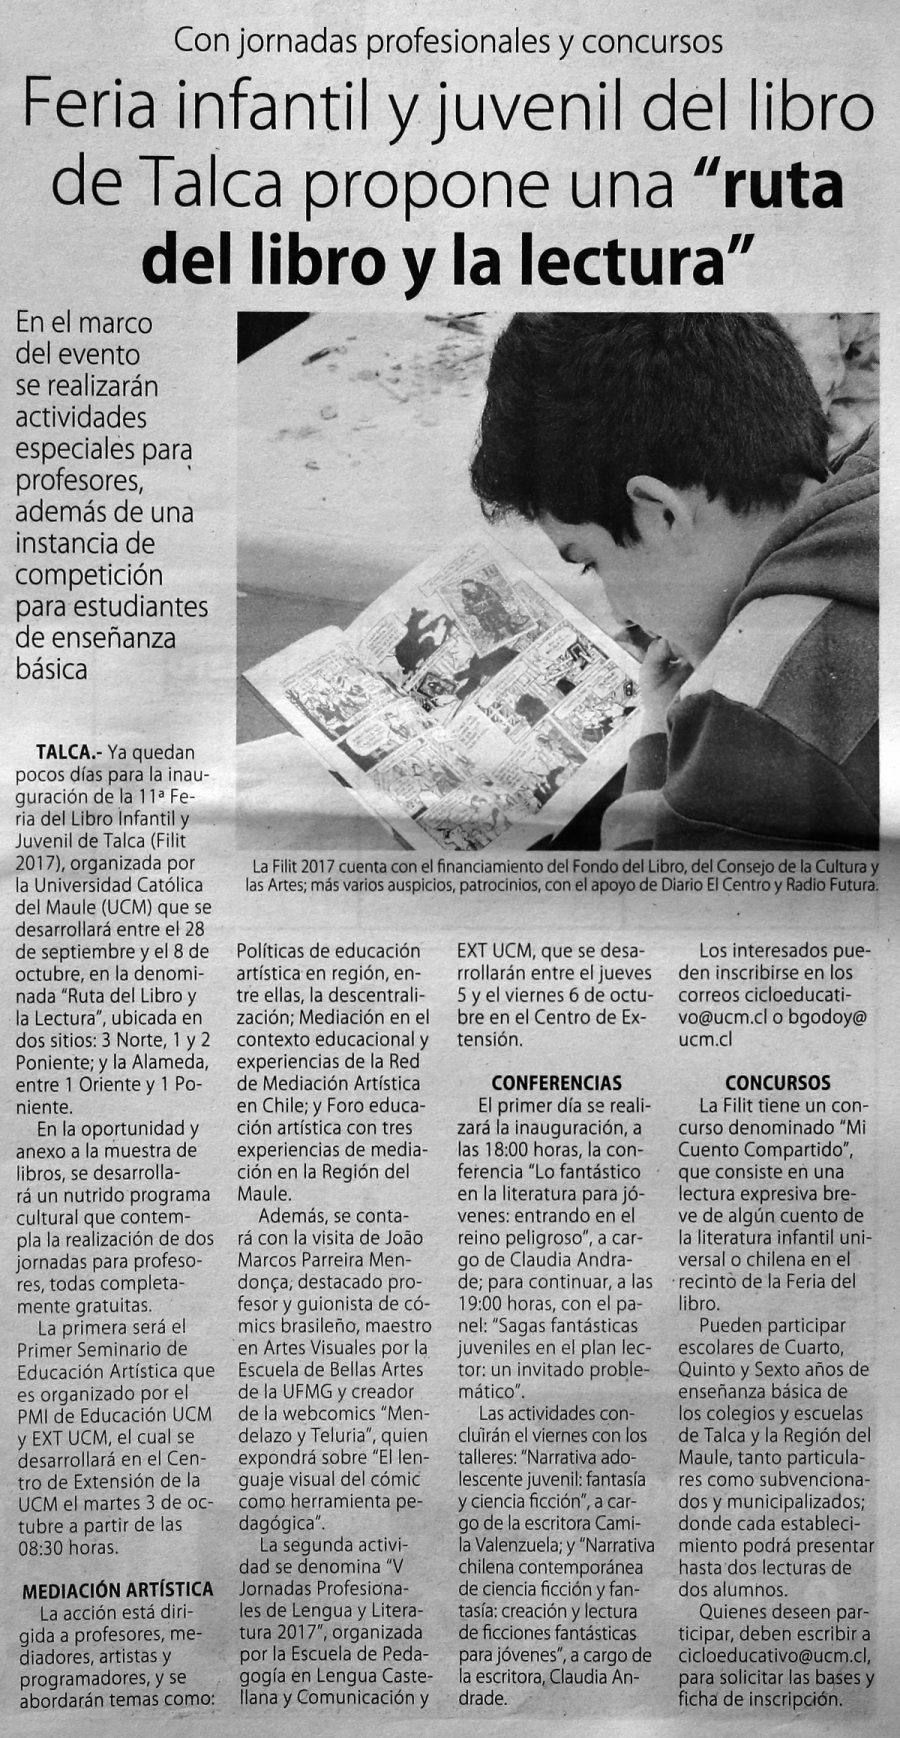 24 de septiembre en Diario El Centro: “Feria Infantil y Juvenil de libro de Talca proporciona una “ruta del libro y la lectura”